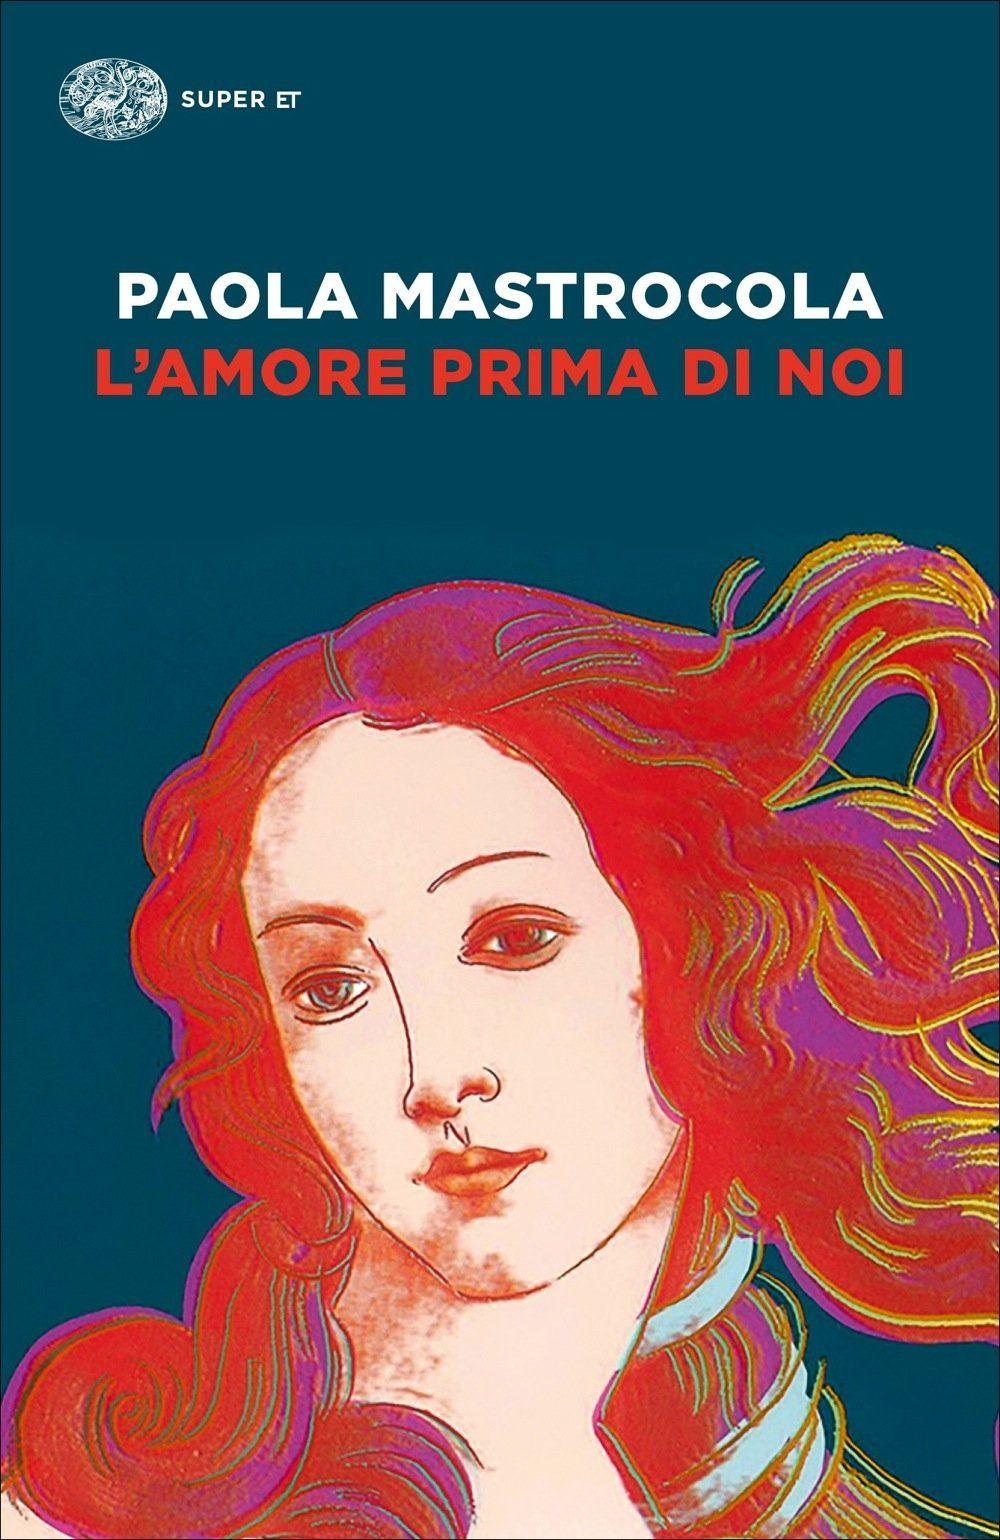 Libro "L'amore prima di noi" di Paola Mastrocola